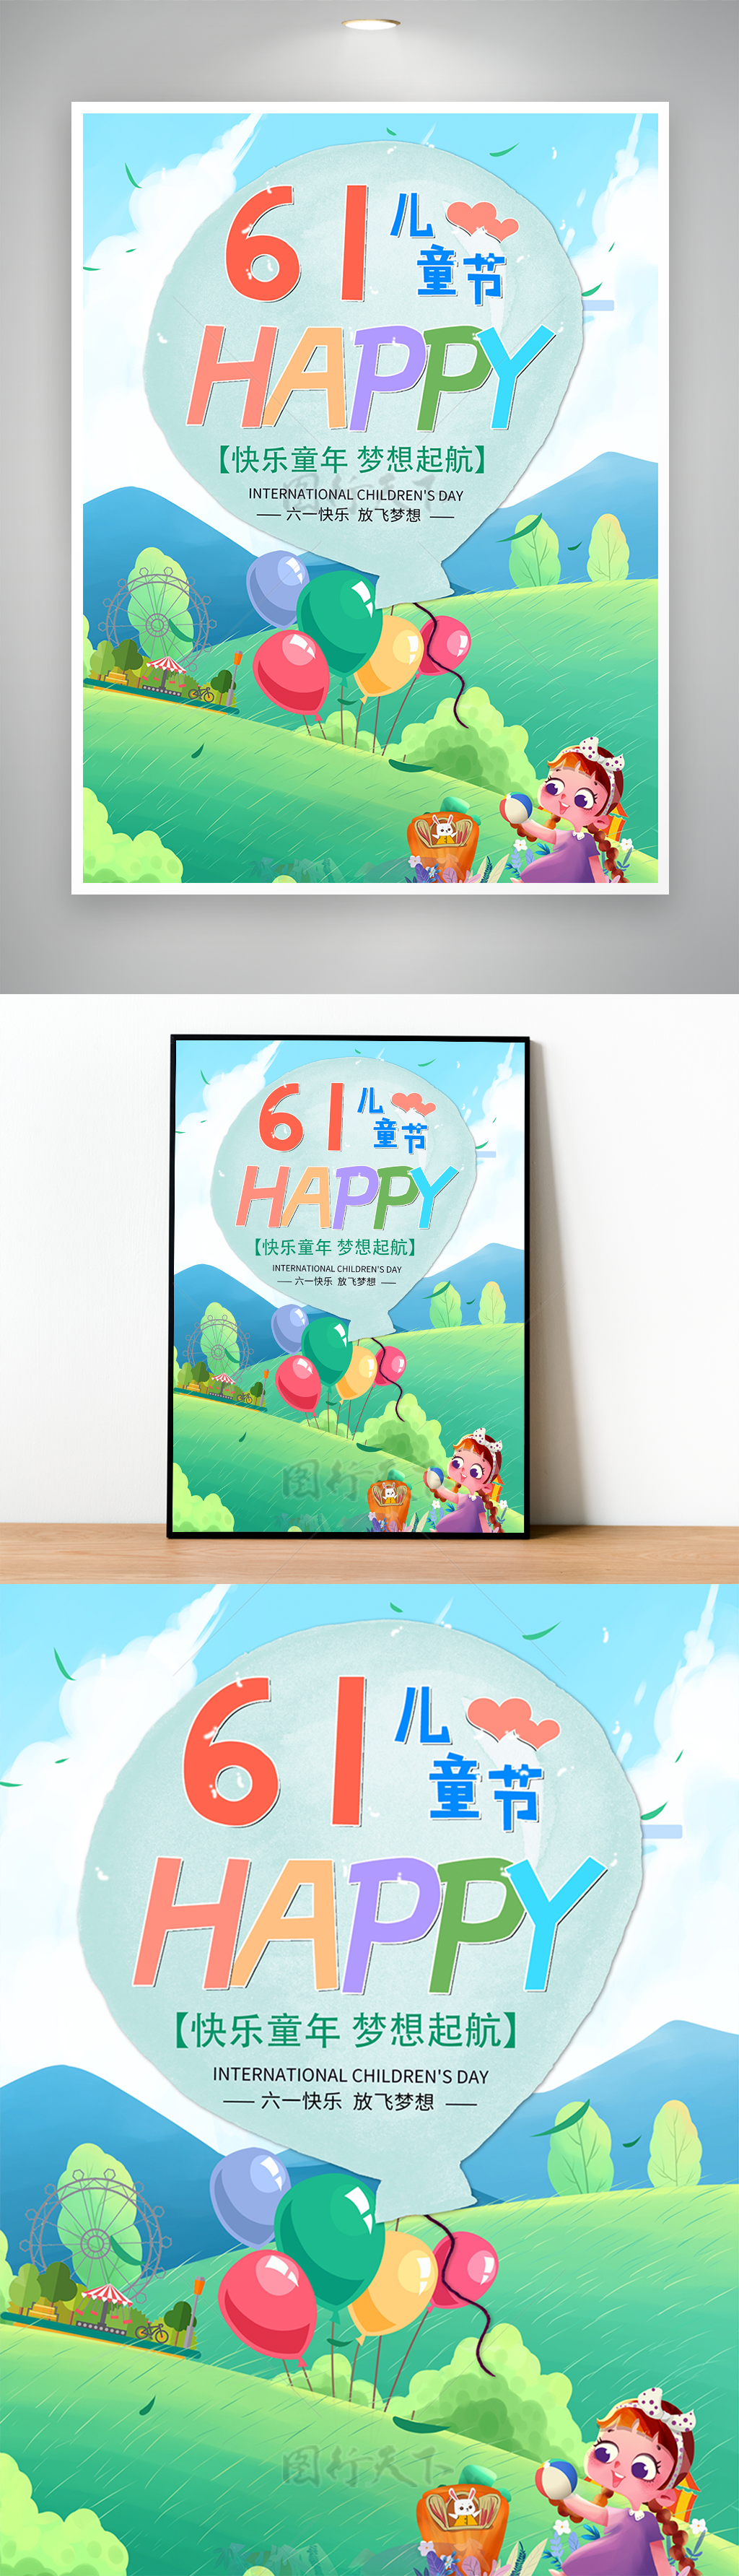 61儿童节happy气球户外节日海报